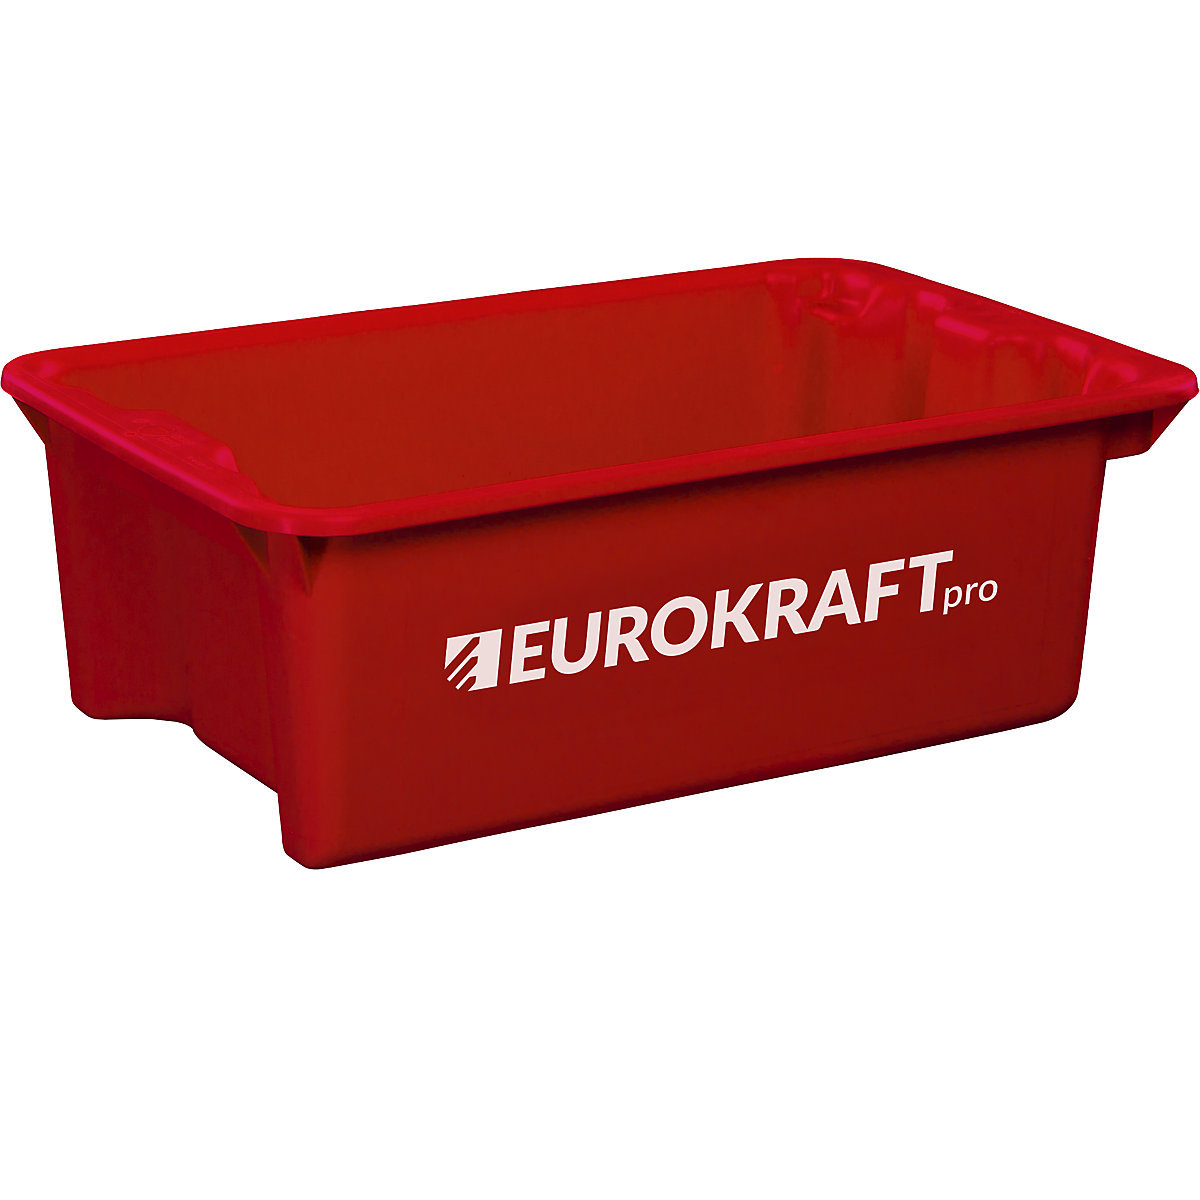 EUROKRAFTpro Drehstapelbehälter aus lebensmittelechtem Polypropylen, Inhalt 34 Liter, VE 3 Stk, Wände und Boden geschlossen, rot